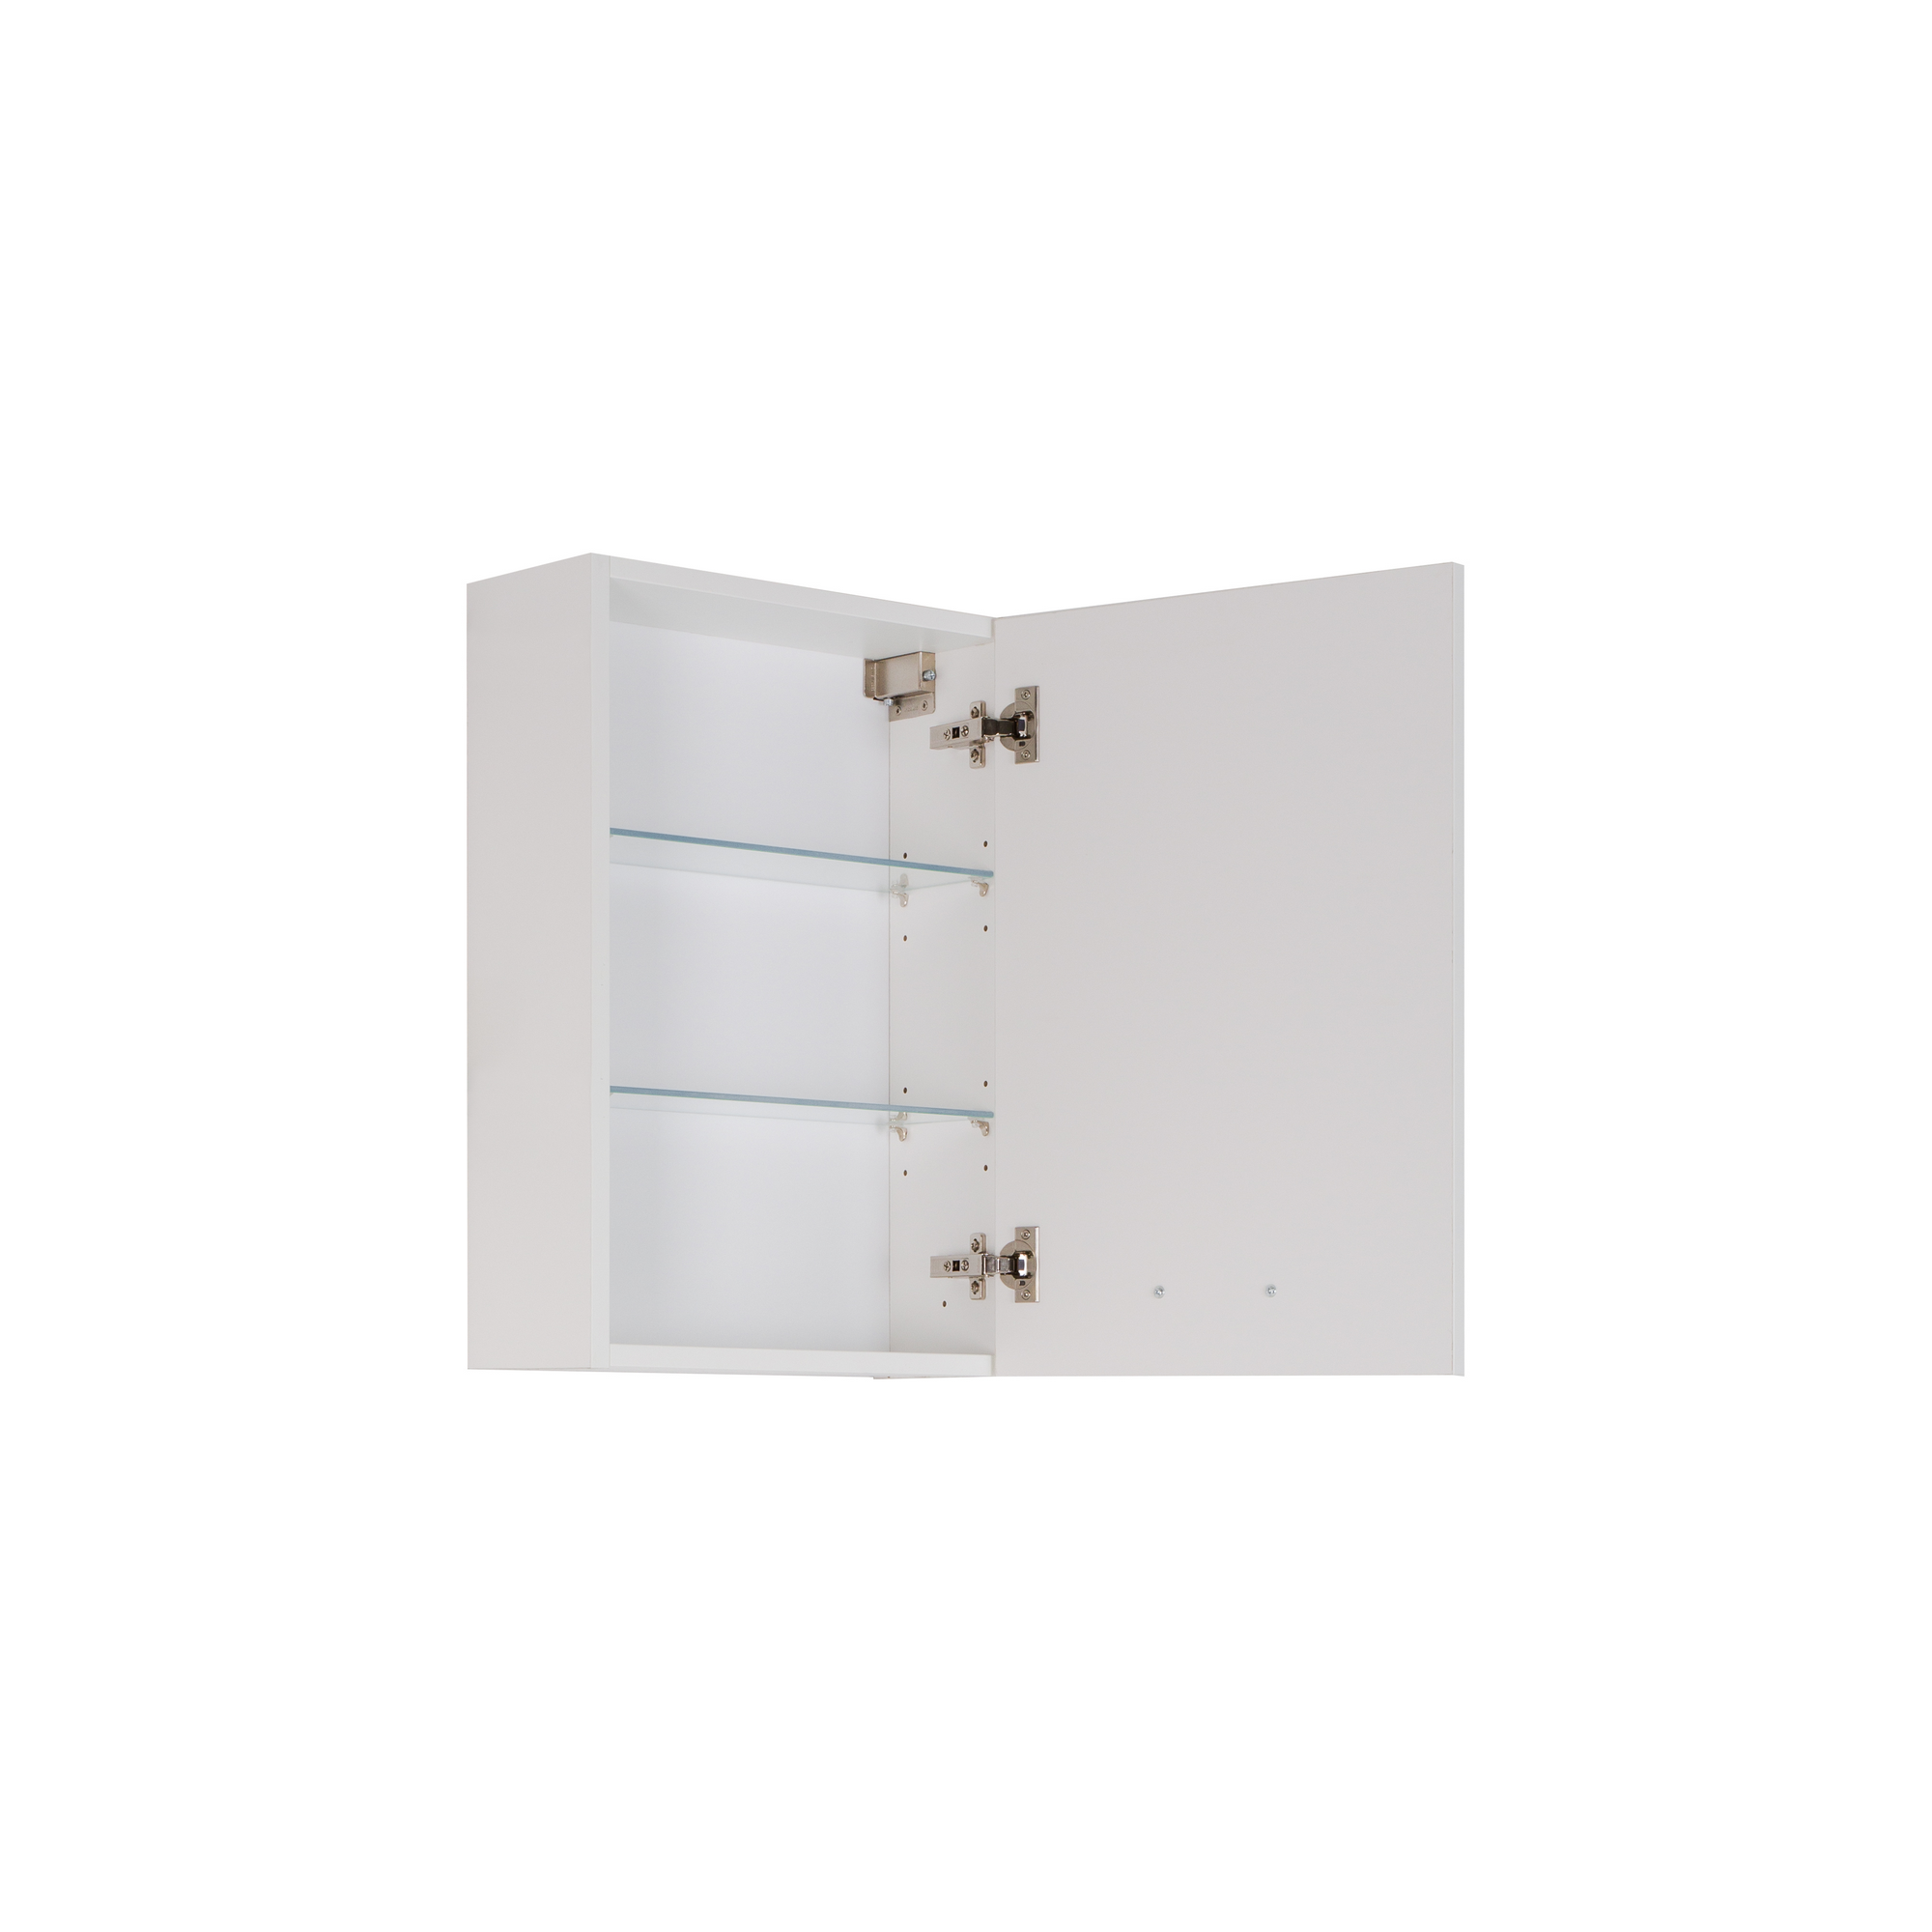 Beistellschrank 'OPTIpremio 2990' weiß 40 x 17,4 x 68,2 cm + product picture